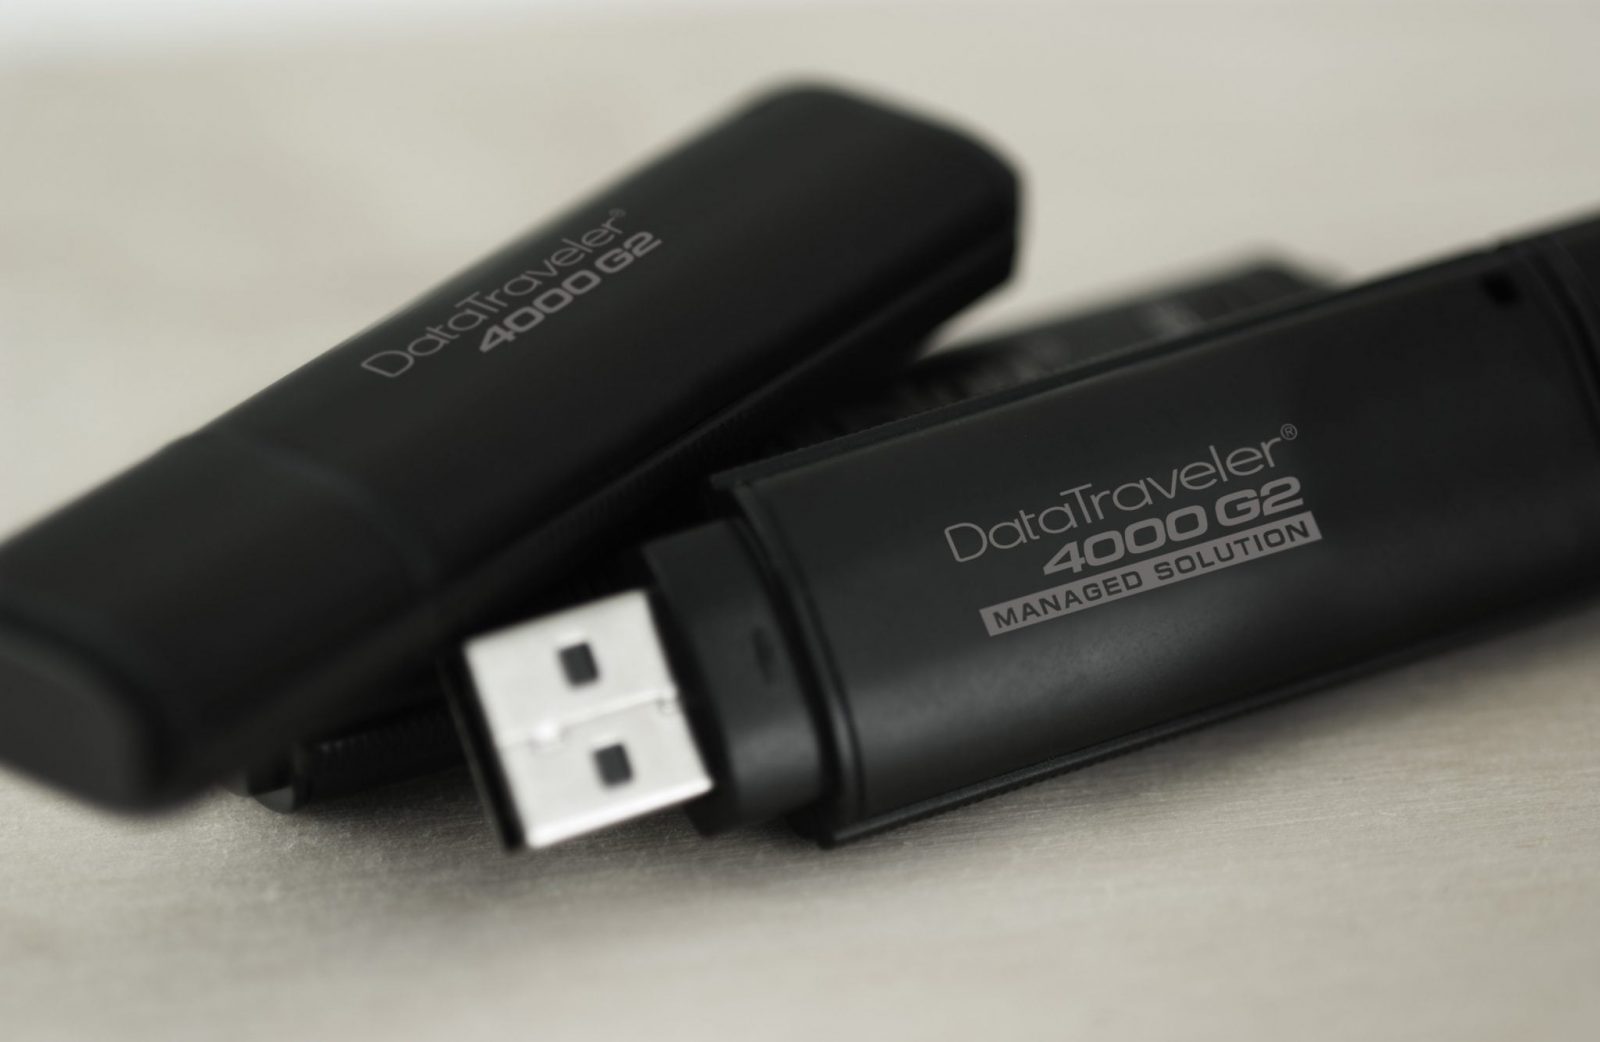 Kingston Digital presenta i nuovi Flash Drive USB crittografati con certificazione FIPS 140-2 di livello 3 e l’opzione Management-Ready 1